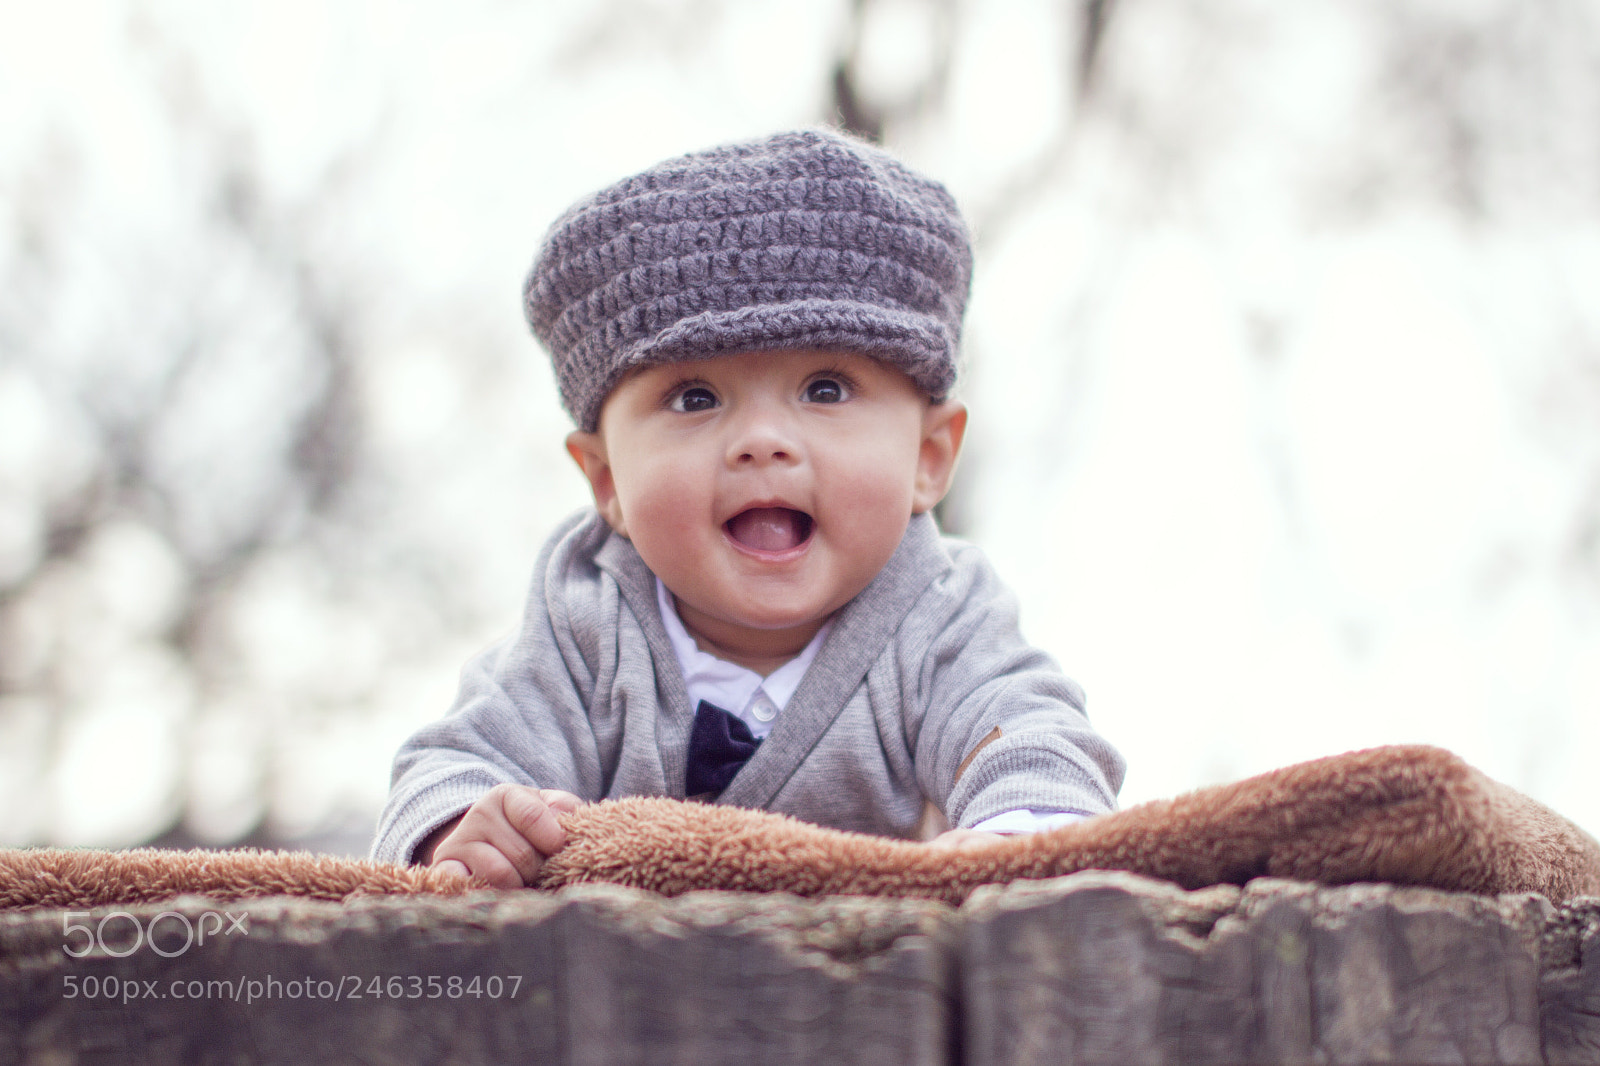 Canon EOS 7D sample photo. Baby boy photography